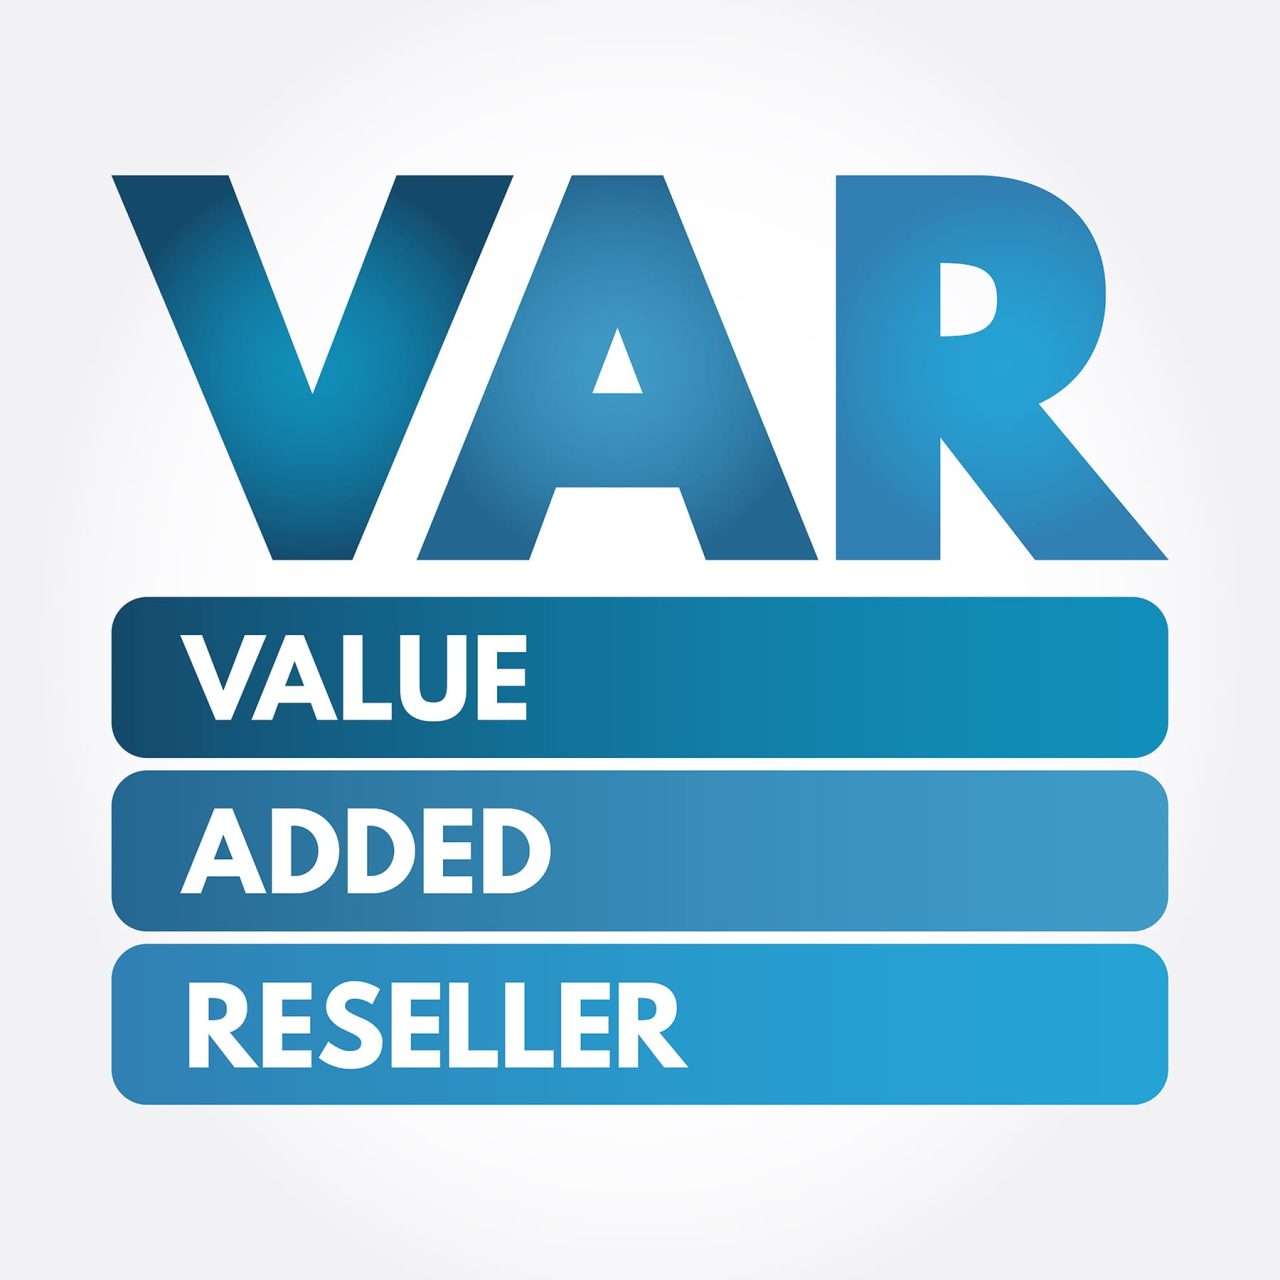 Value-Added-Reseller in london uk